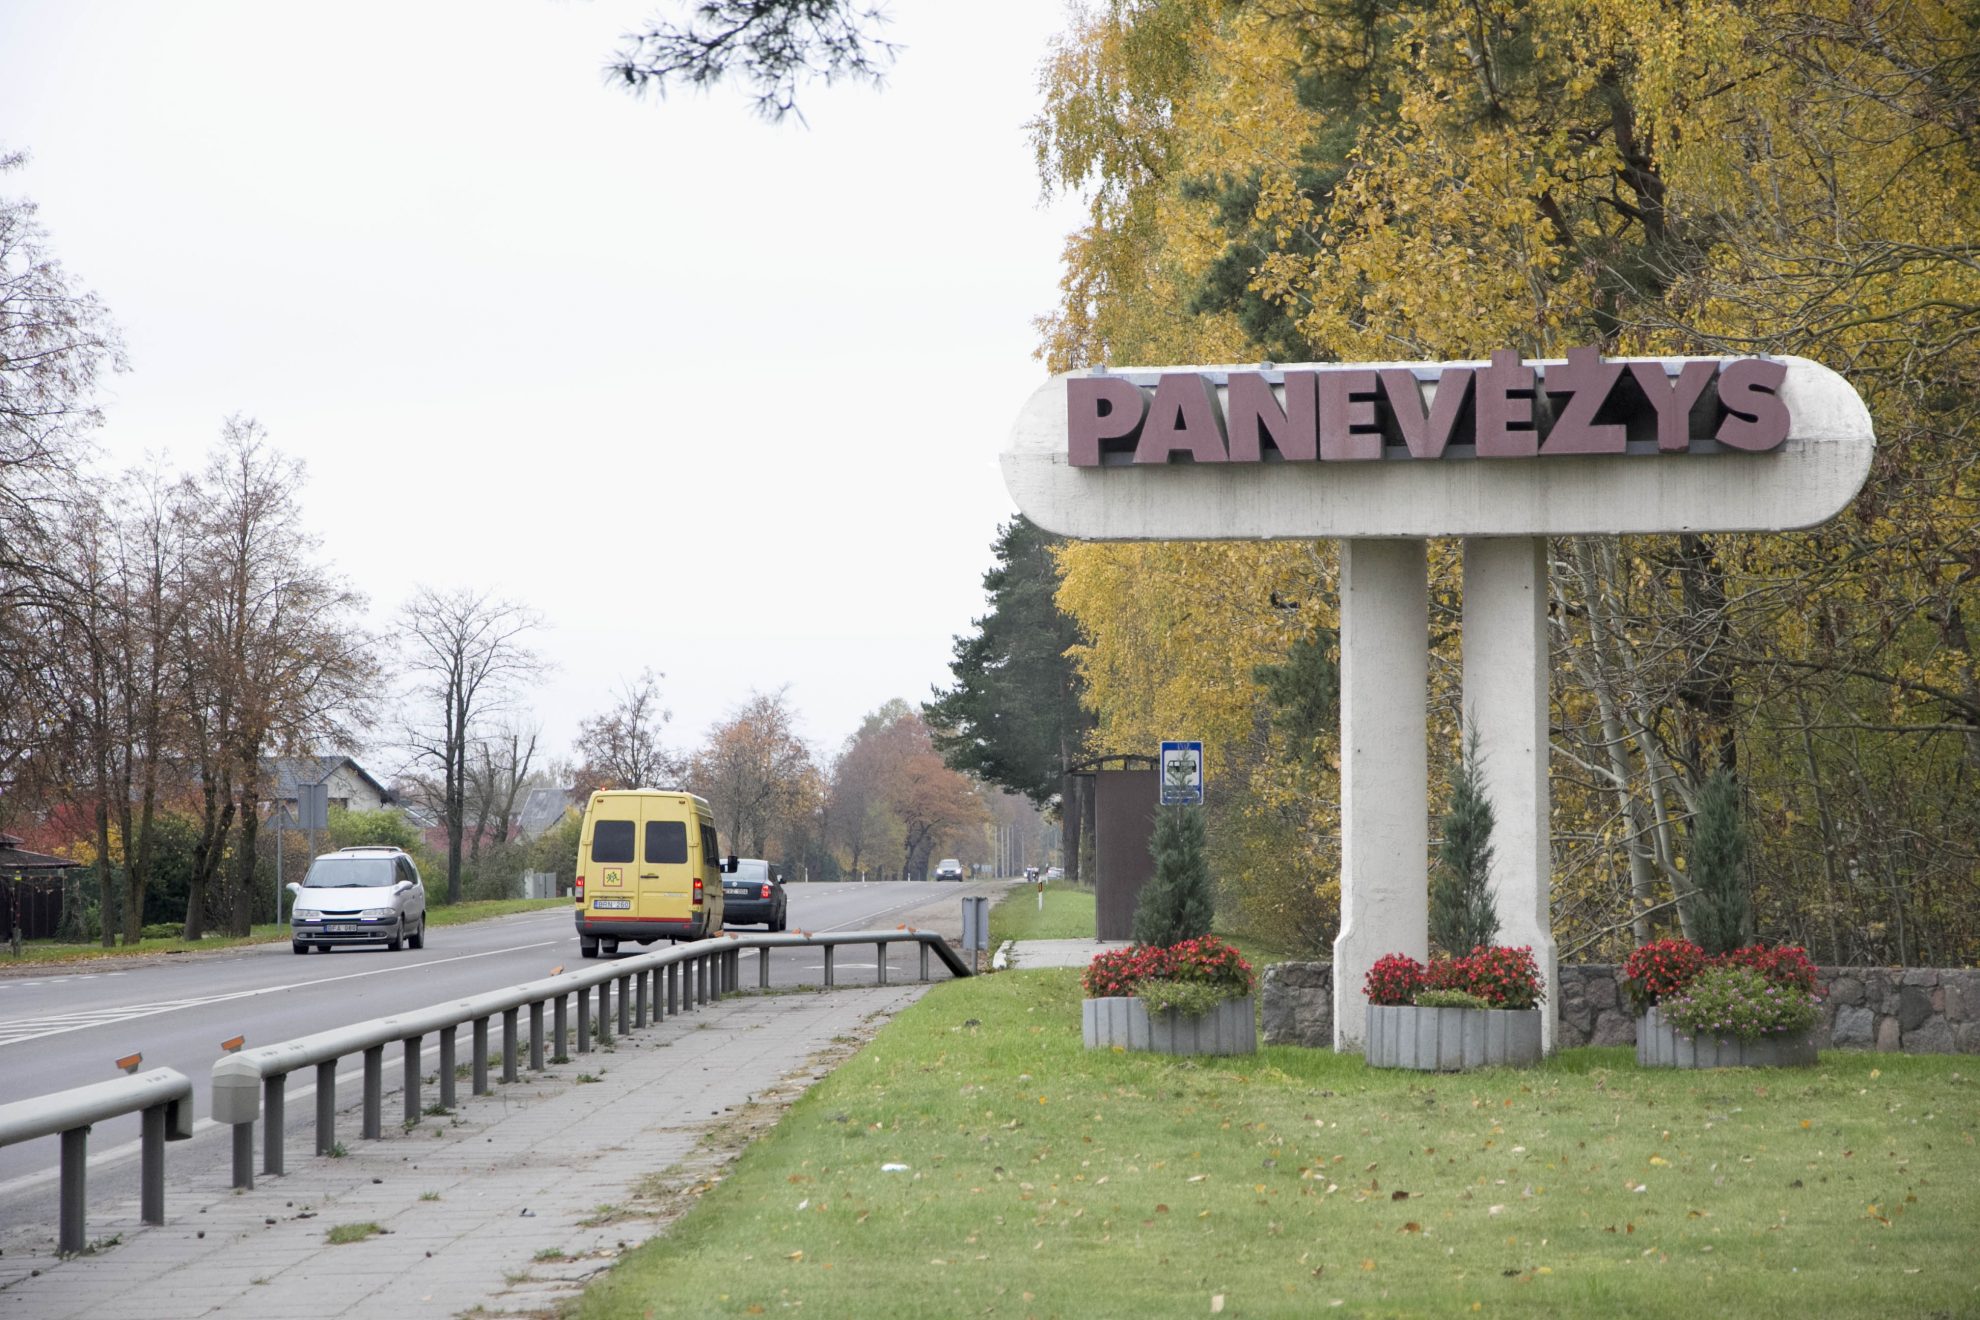 Panevėžio miesto savivaldybės administracijos direktorius Rimantas Pauža pasirašė finansavimo sutartis, pagal kurias miestas gauna finansavimą 3 projektams – Atvirajam jaunimo centrui stiprinti, ekoturizmui vystyti ir apleistoms teritorijoms tvarkyti. Beveik 292 000 Eur Panevėžiui skirta pagal Lietuvos ir Latvijos bendradarbiavimo per sieną 2014-2020 m. programą.